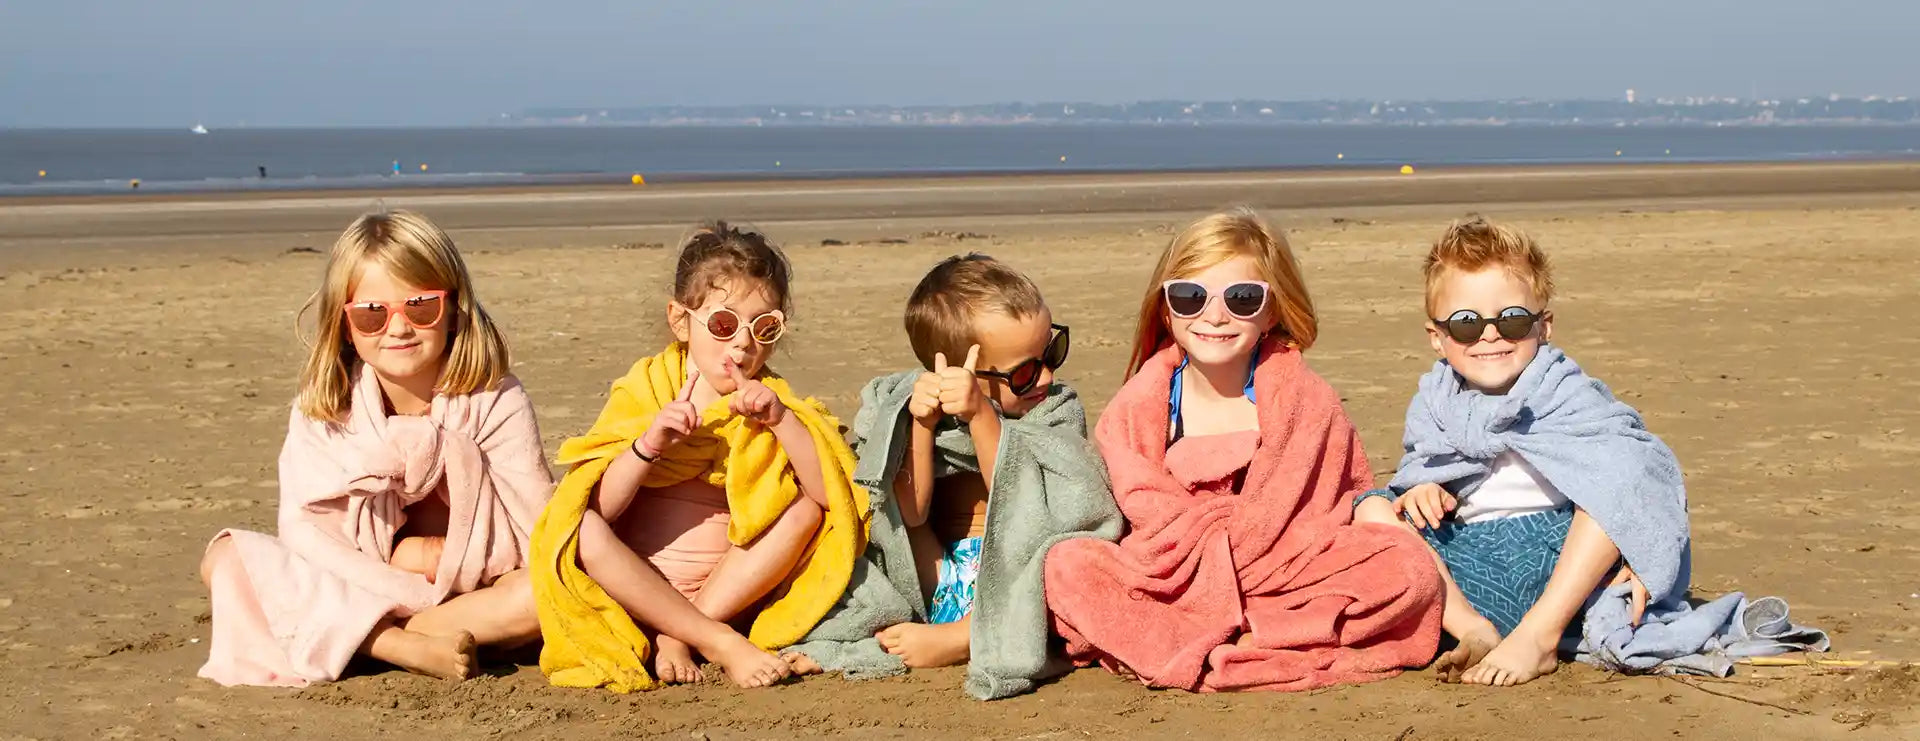 Enfants assis sur le sable avec lunette soleil